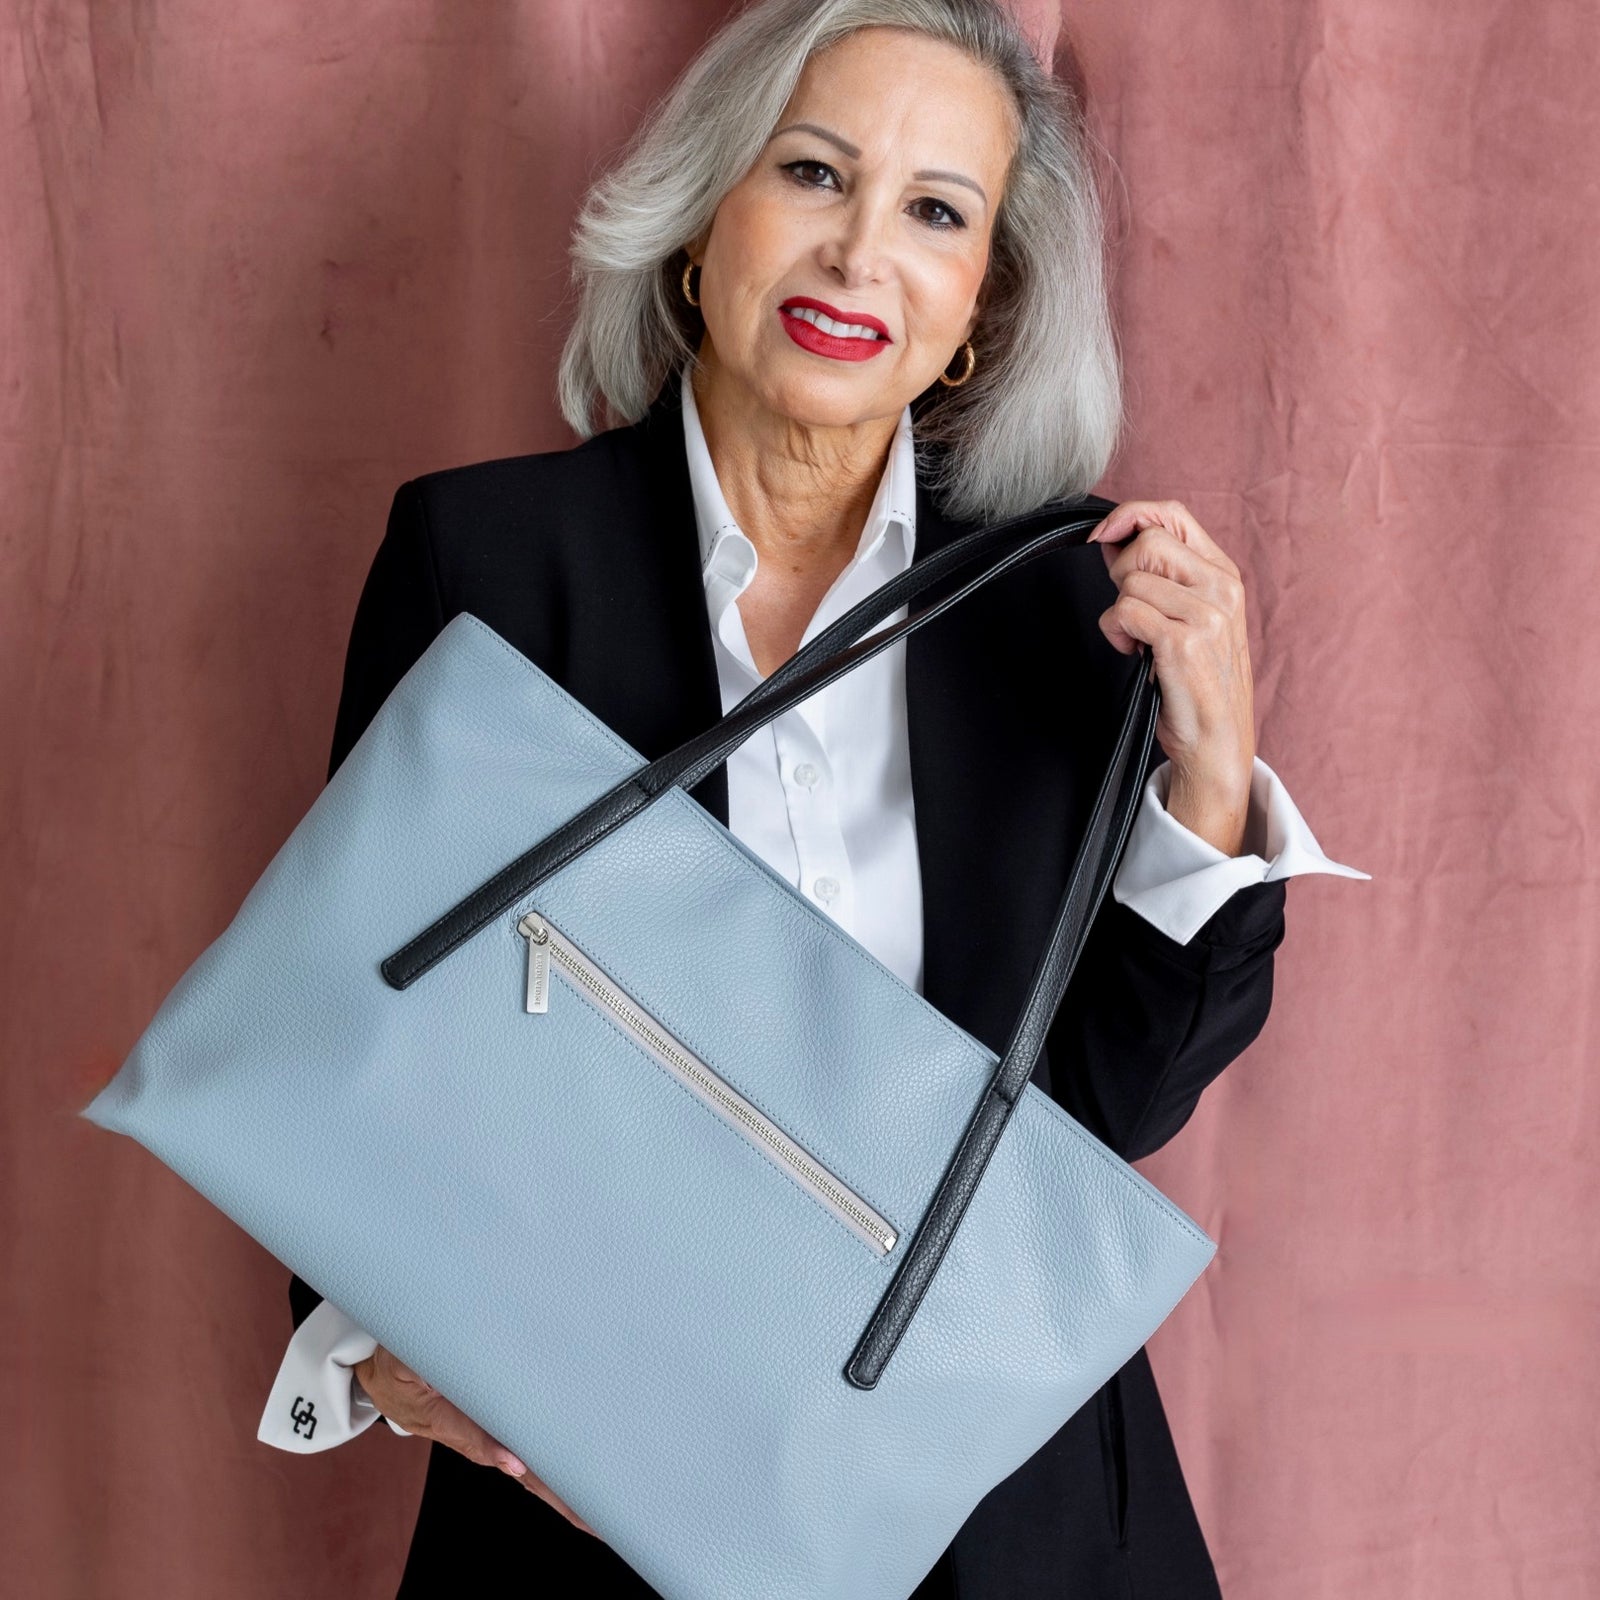 AIDRANI Fashion Small luxury Handbags leather Handbags Trendy High